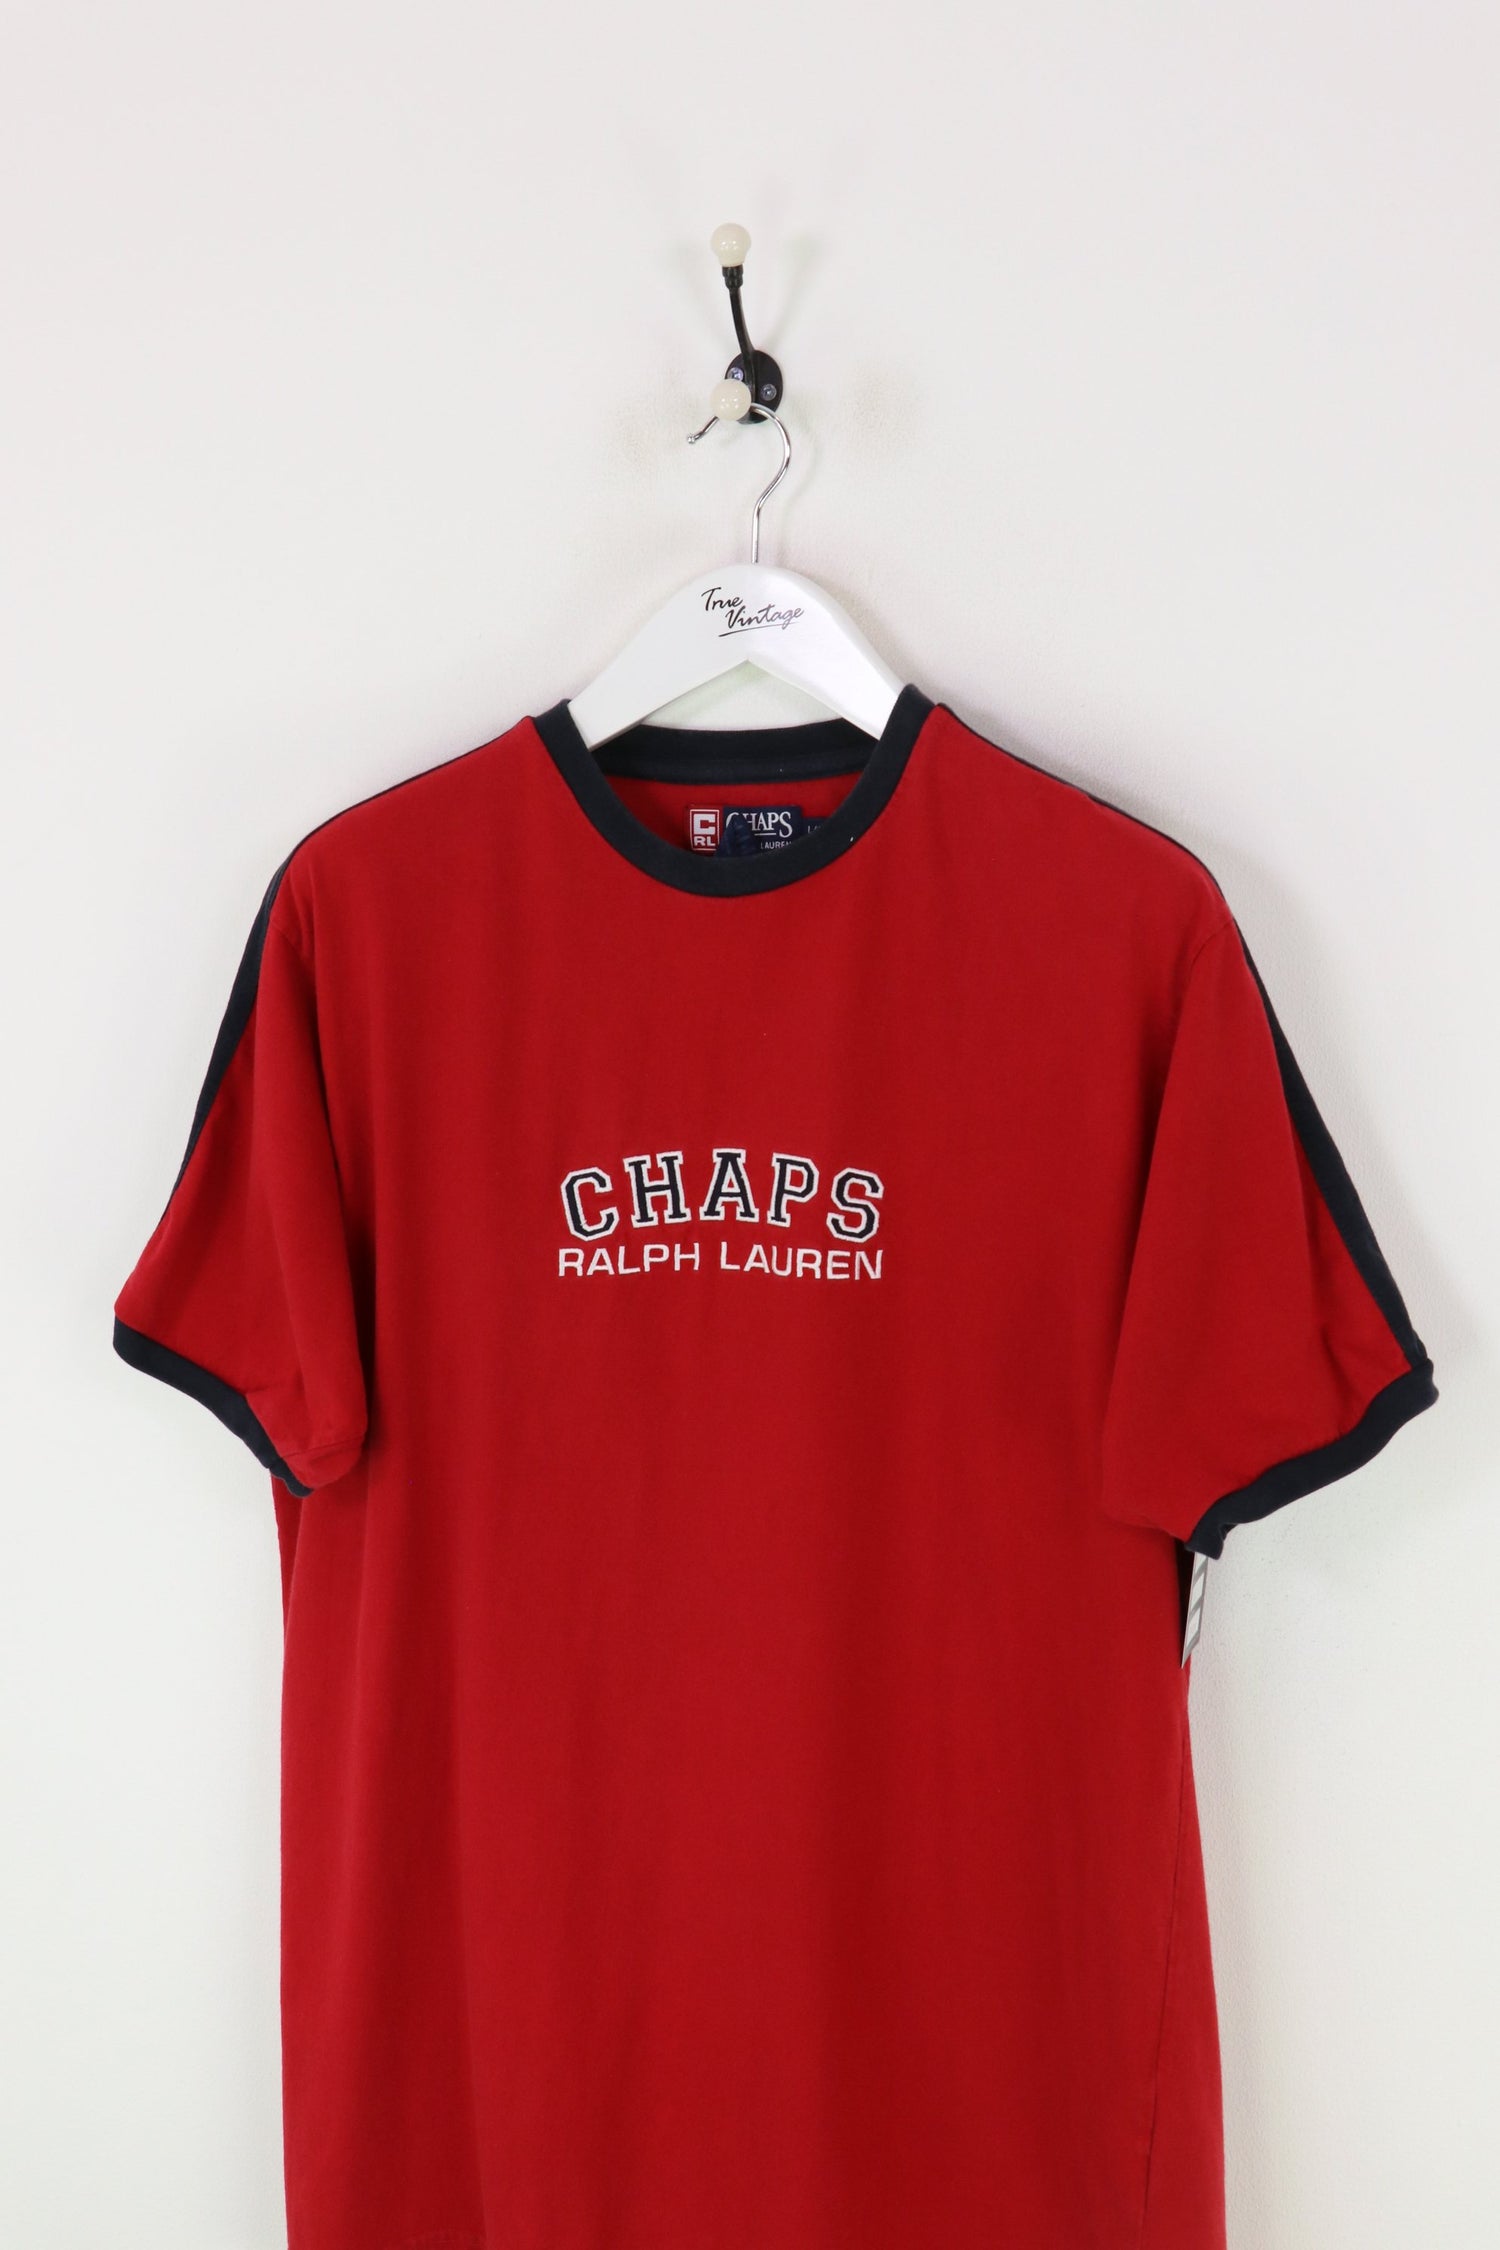 Ralph Lauren Chaps T-shirt Red XL